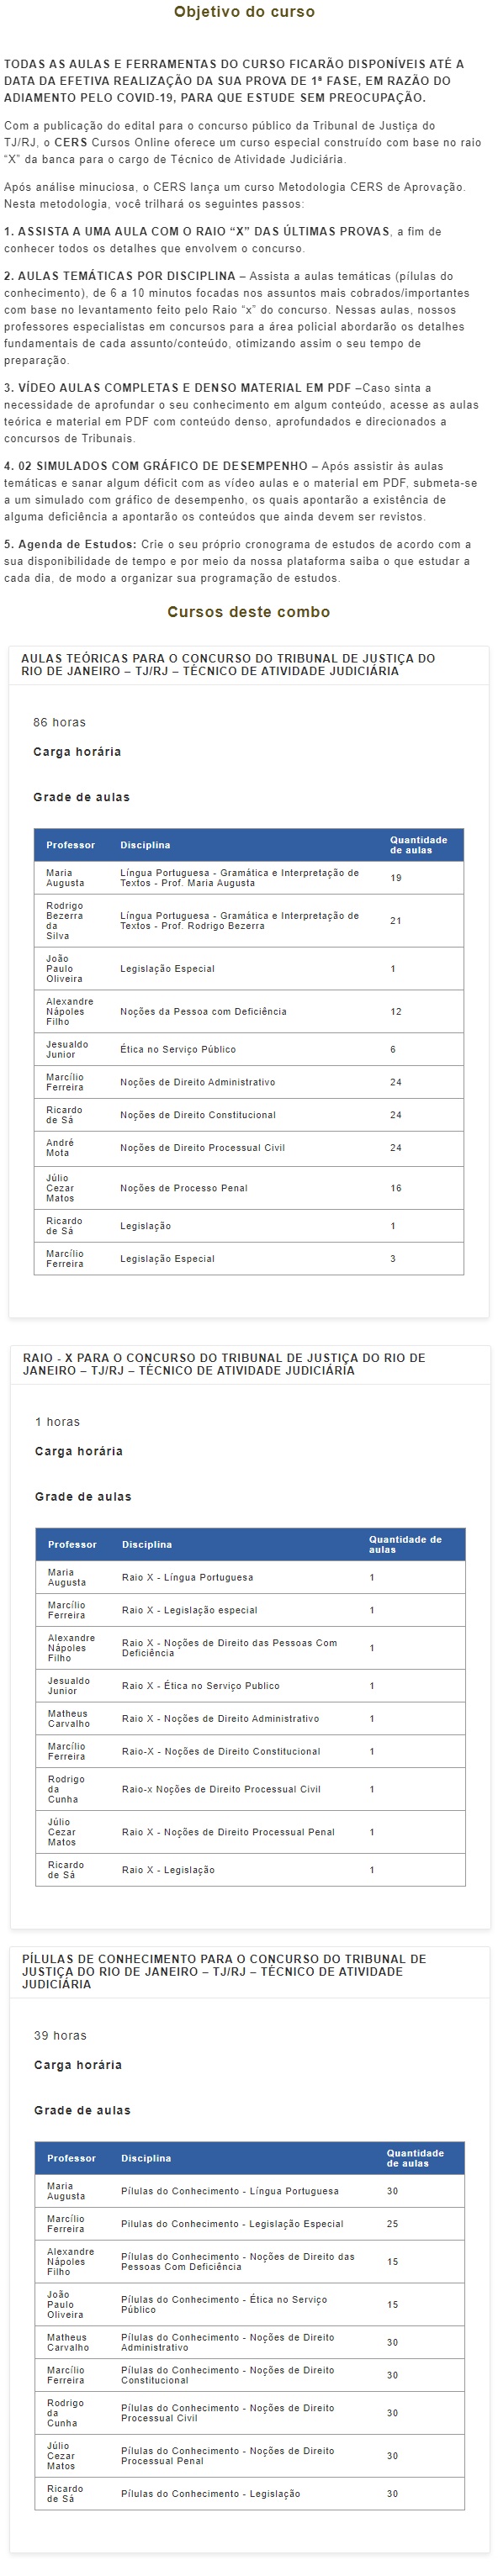 TJ RJ - Técnico Atividade Judiciária (CERS 2021) Tribunal de Justiça do Rio de Janeiro 4